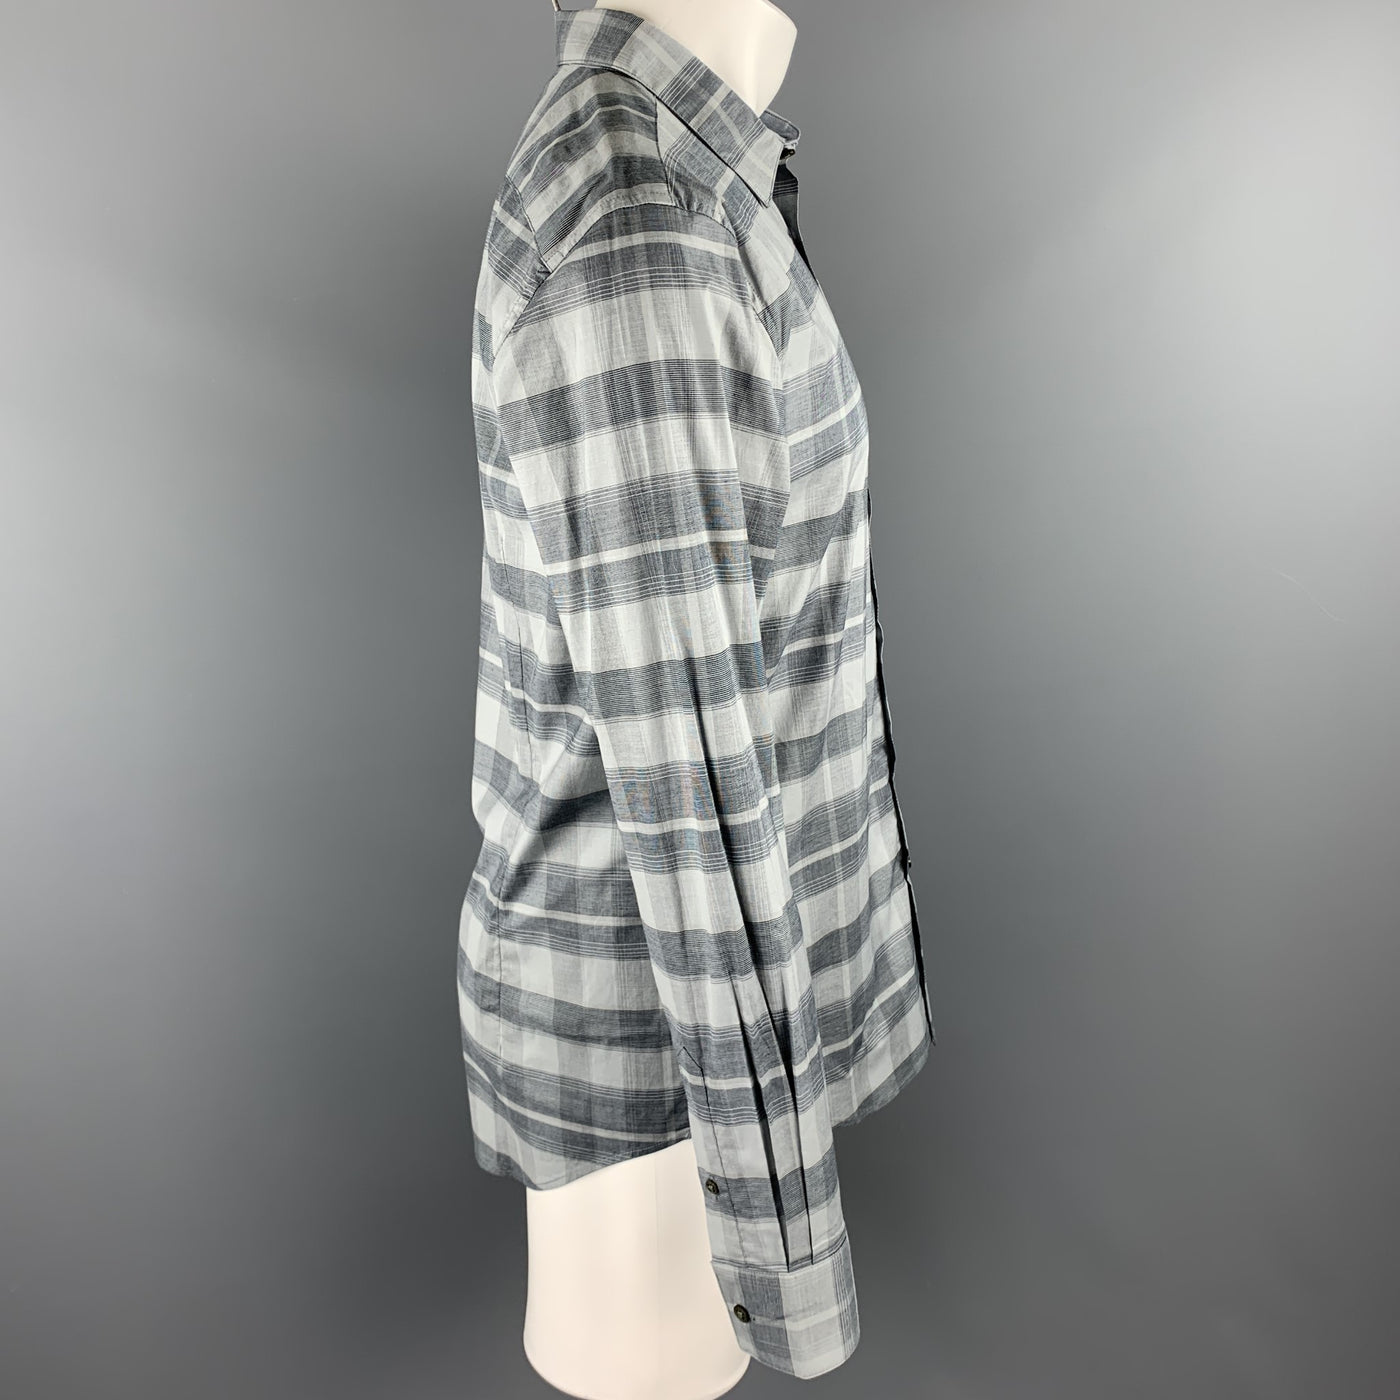 JOHN VARVATOS Luxe Size M Grey Plaid Cotton Button Up Long Sleeve Shirt